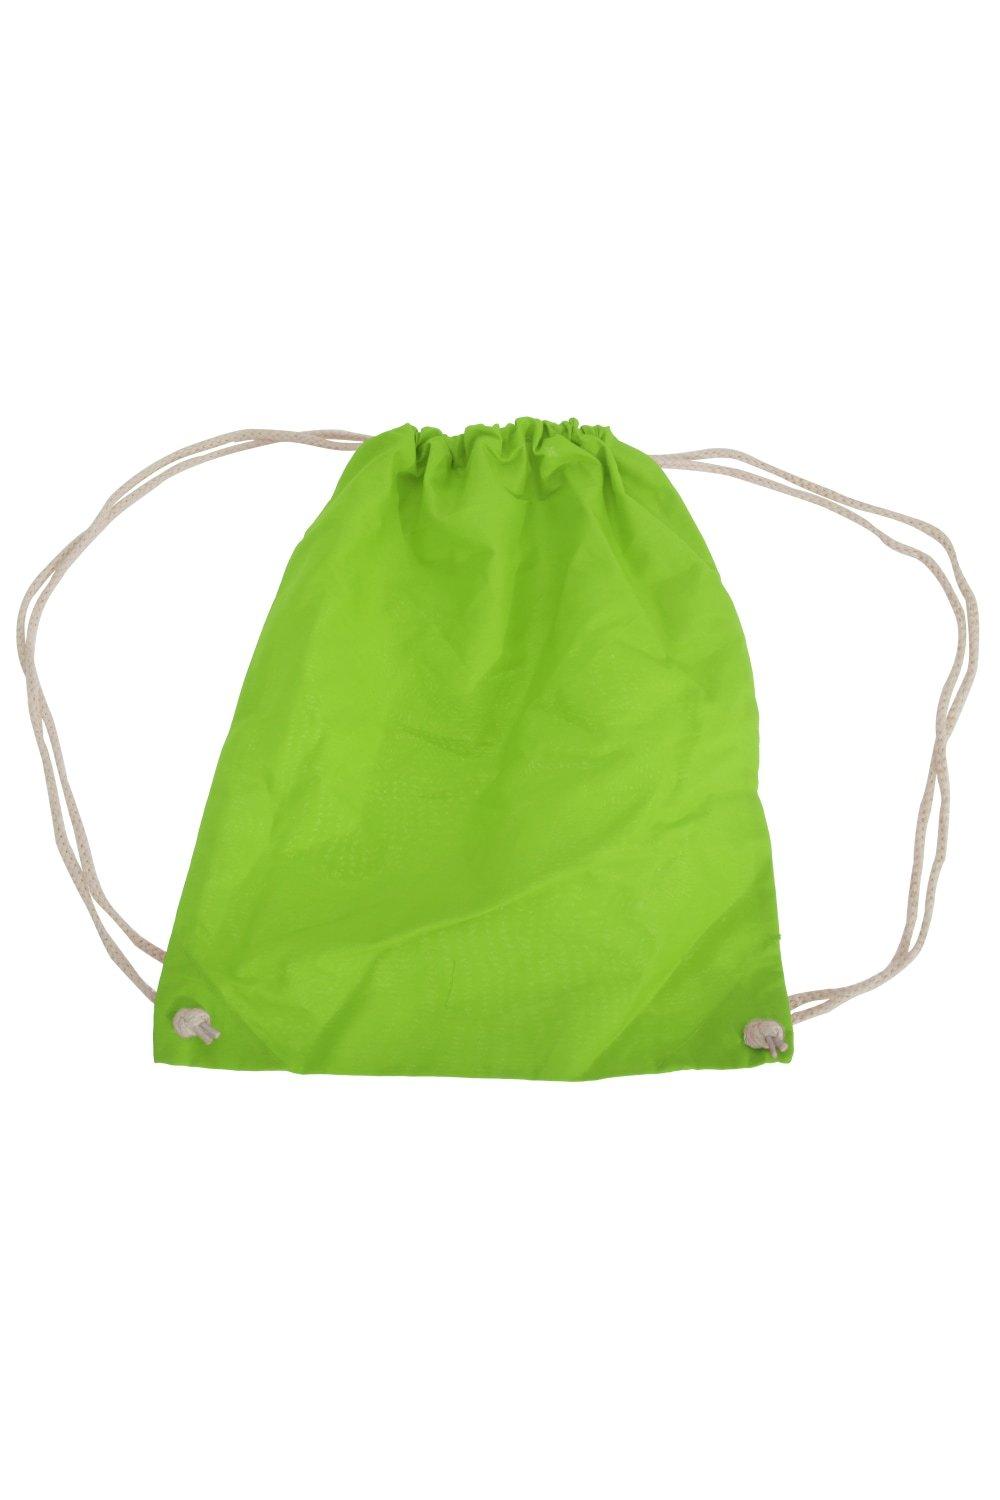 цена Хлопковая сумка Gymsac - 12 литров Westford Mill, зеленый